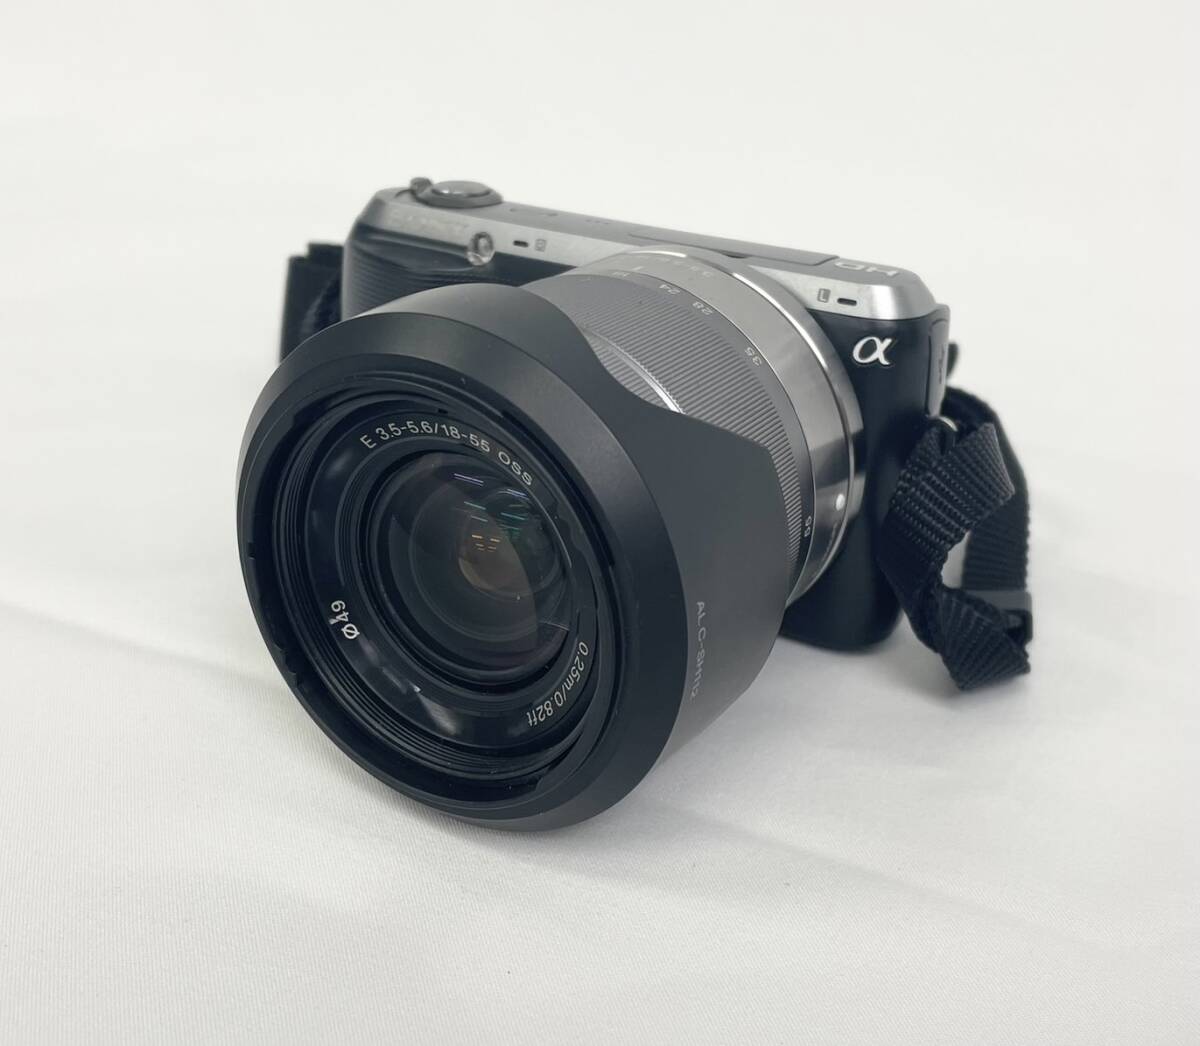  Sony SONY α NEX-C3 digital single‐lens reflex camera E 3.5-5.6/18-55 OSS 0.25m/0.82ft operation verification settled shutter verification settled 34j-4-10